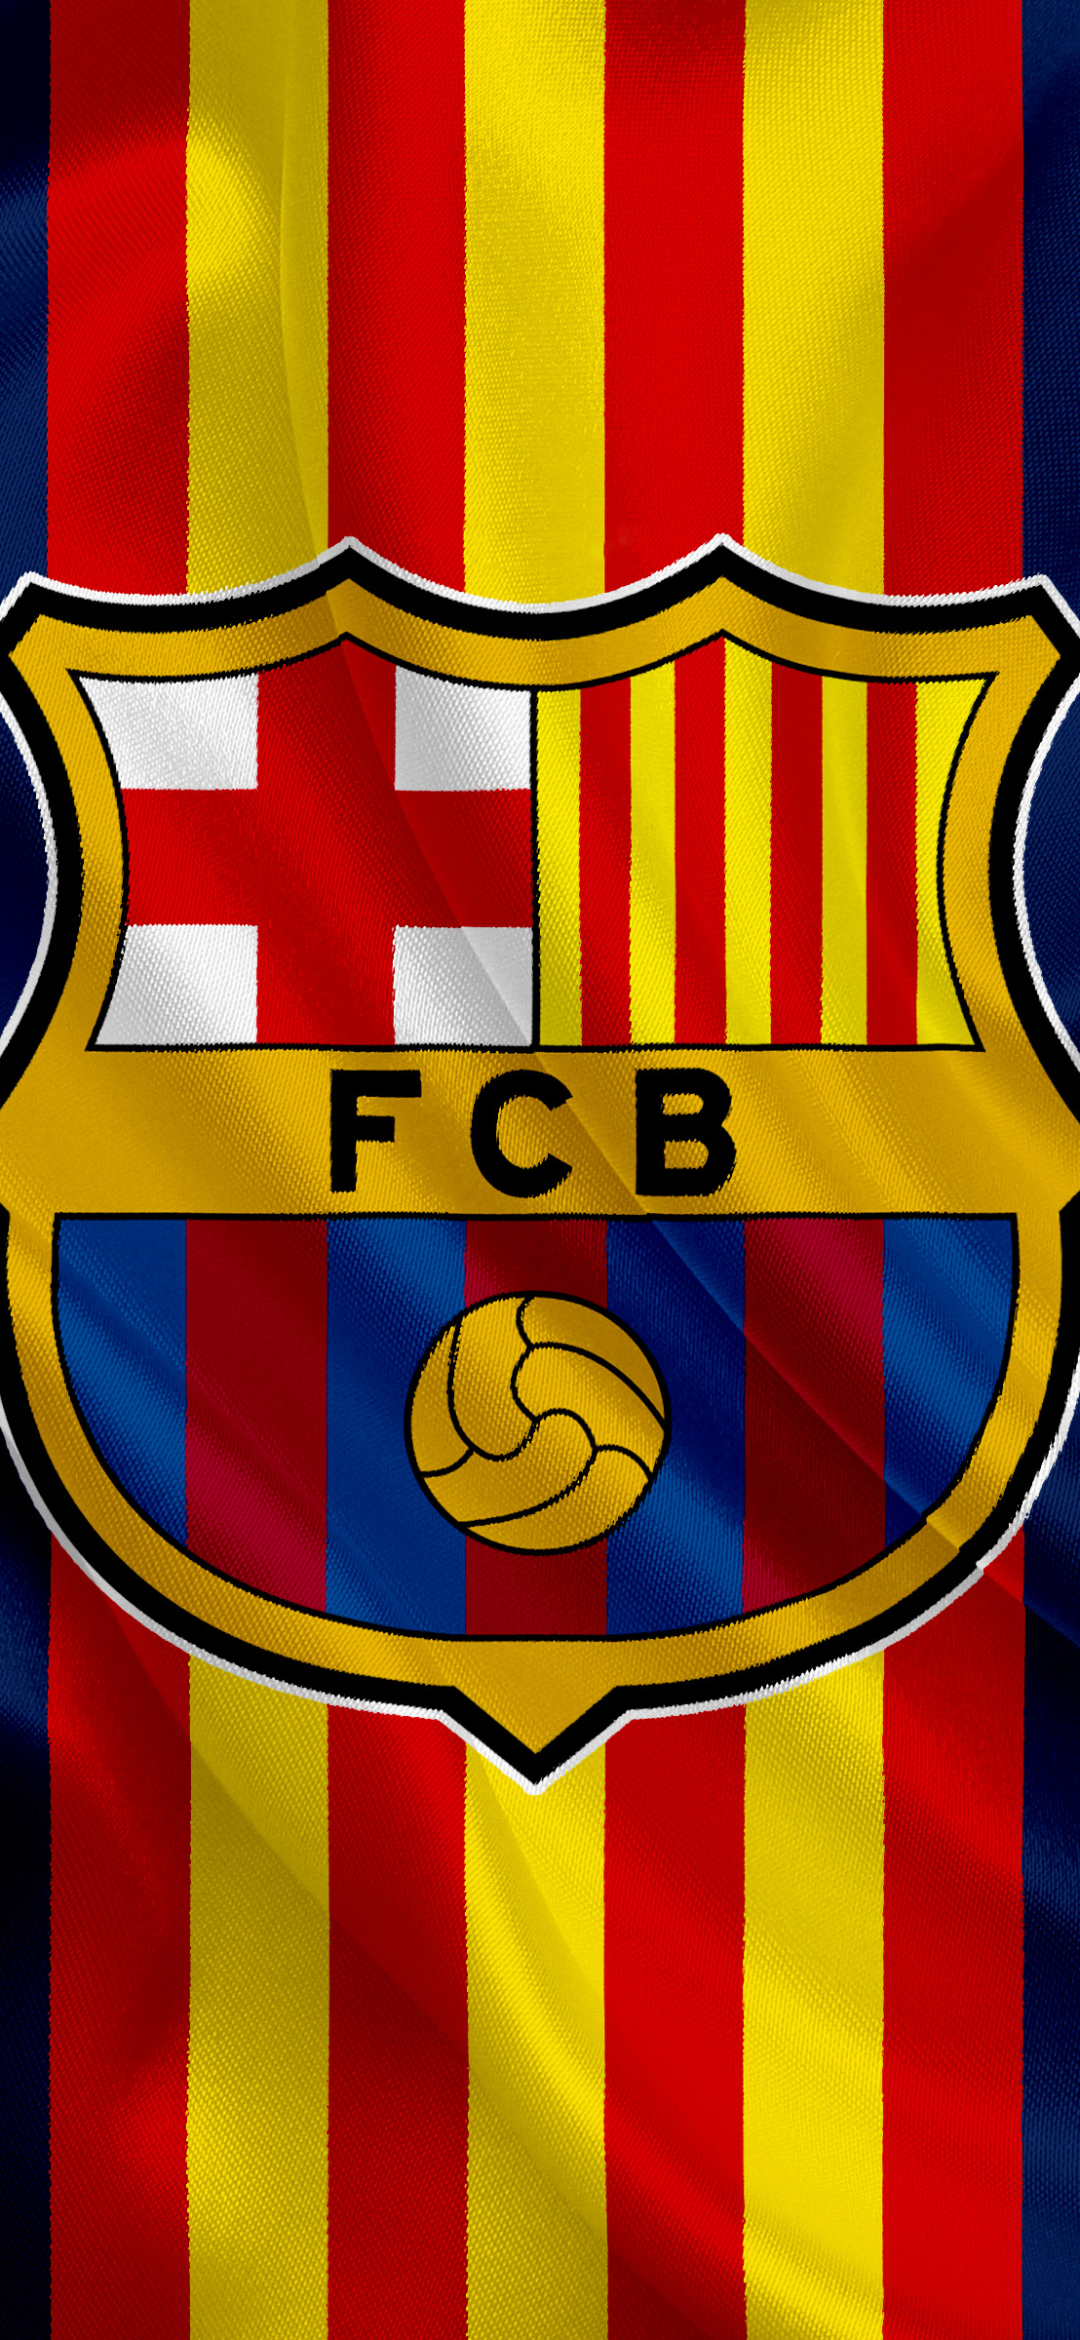 1080x2340 Обои с логотипом Барселоны - Лучшие бесплатные фоны с логотипом Барселоны - WallpaperAccess 